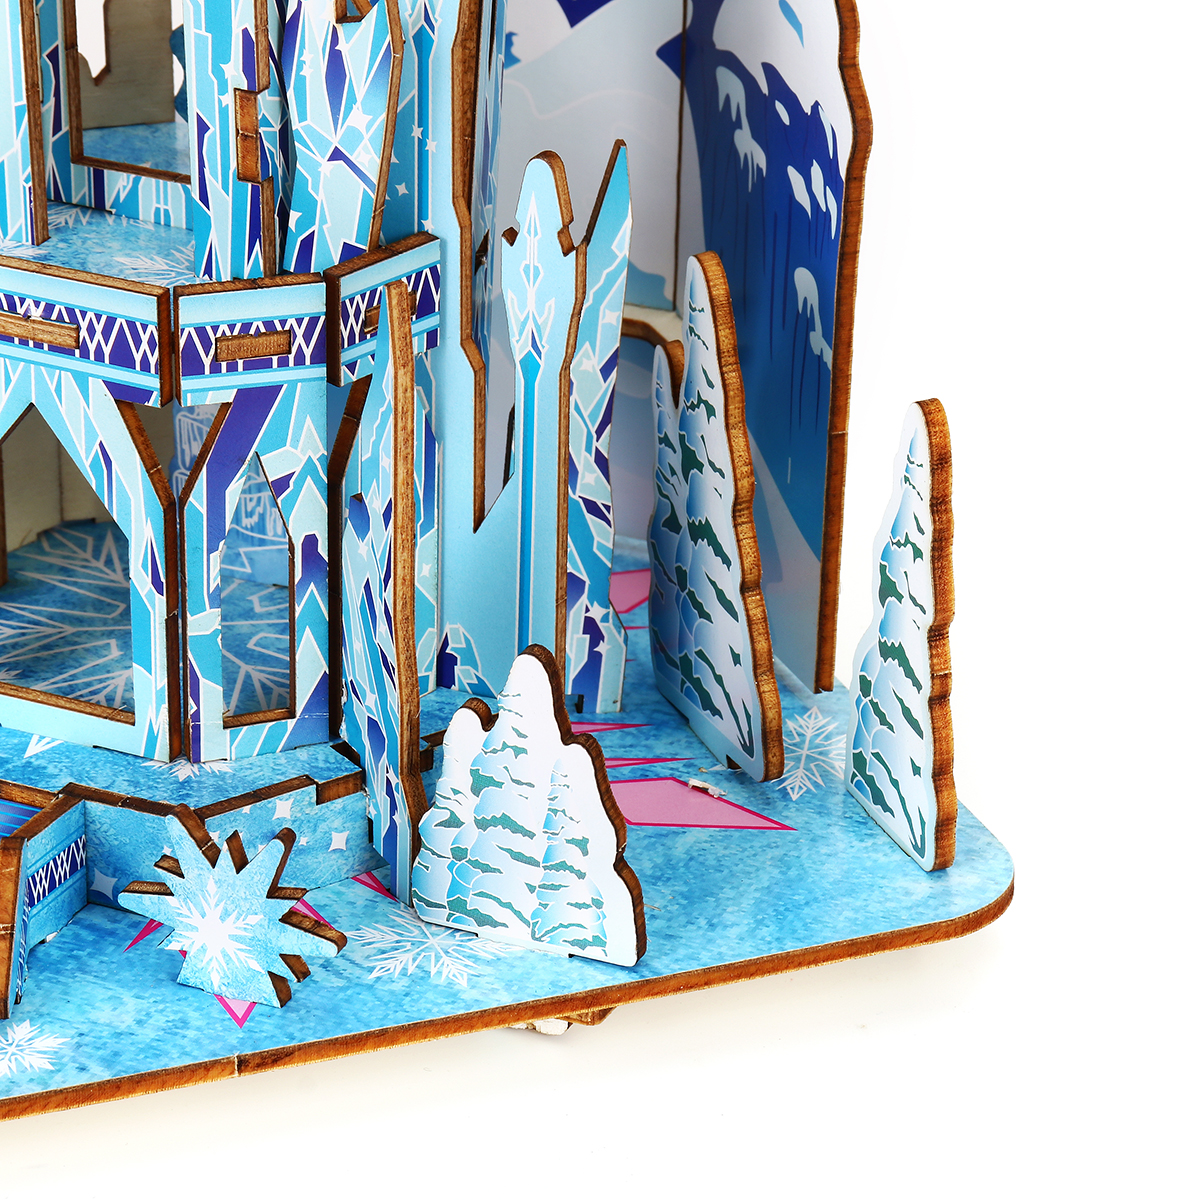 Castelo de gelo de madeira 3D DIY House Kit Puzzle Brinquedos 3D Jigsaw Puzzle Modelo Brinquedo Educacional Presente de aniversário para crianças